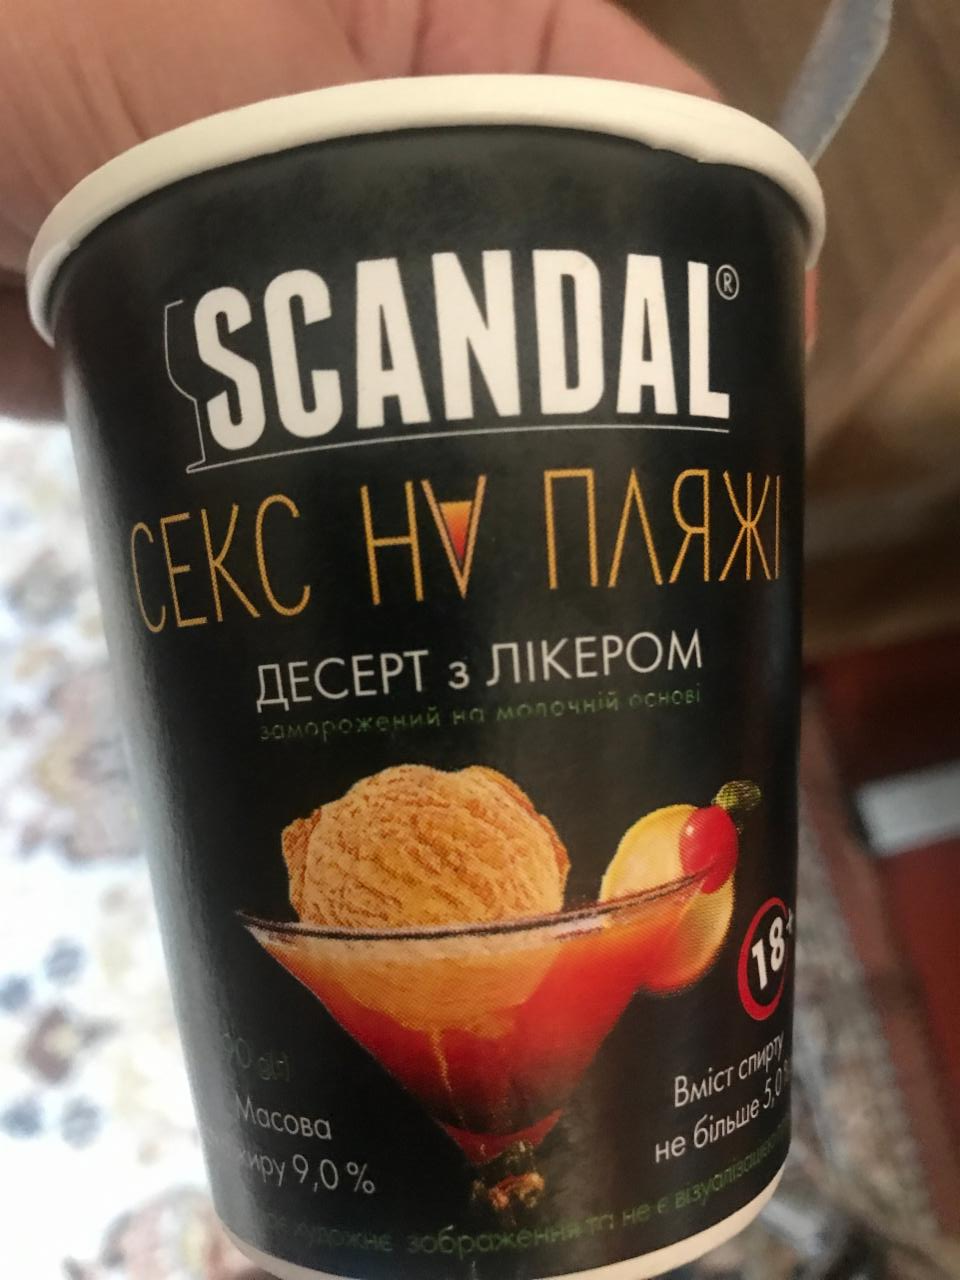 Фото - Мороженое с ликером Секс на пляже Scandal Vital